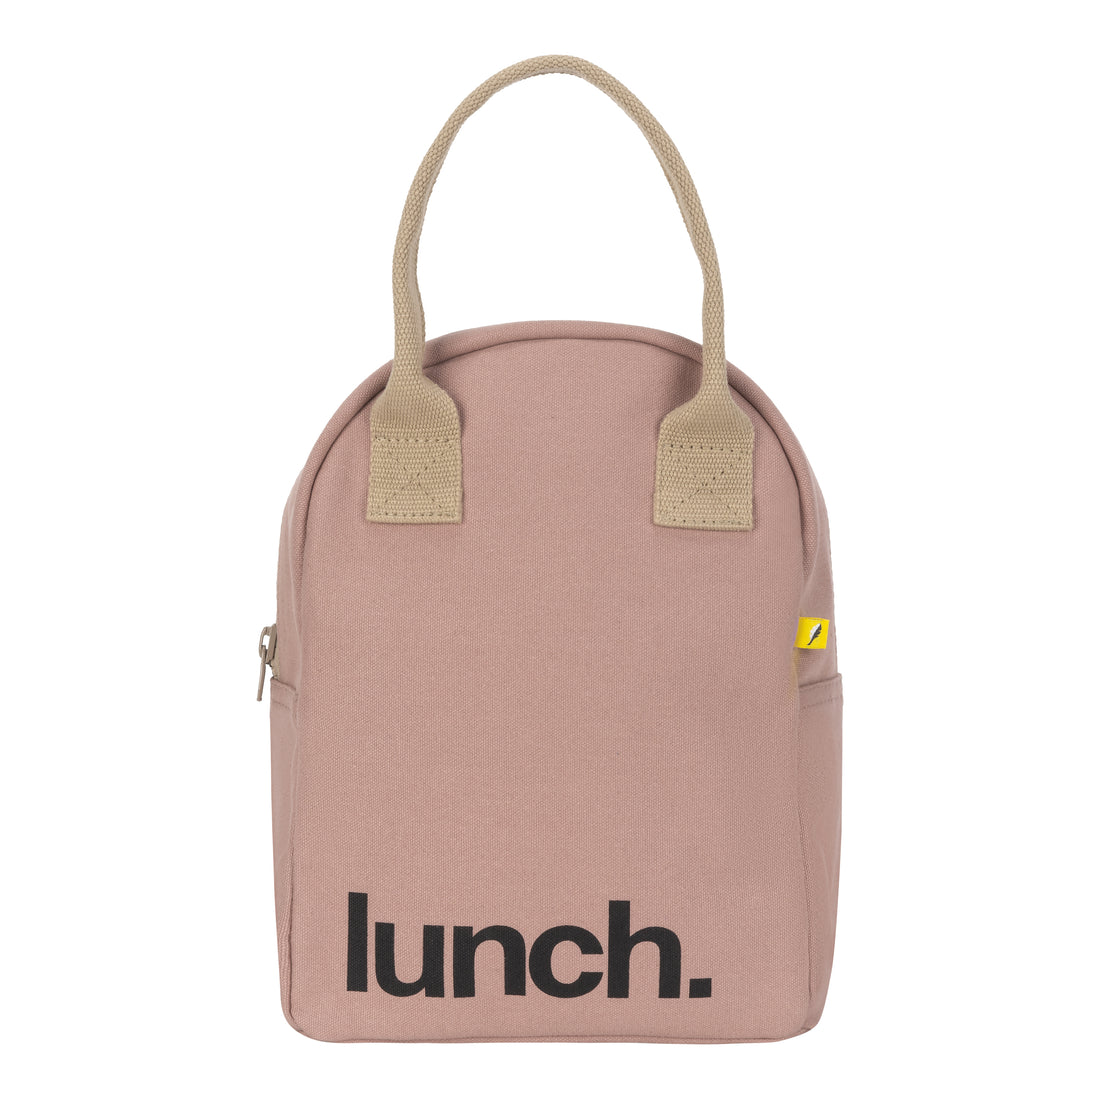 fluf-zipper-lunch-bag-mauve-pink- (1)